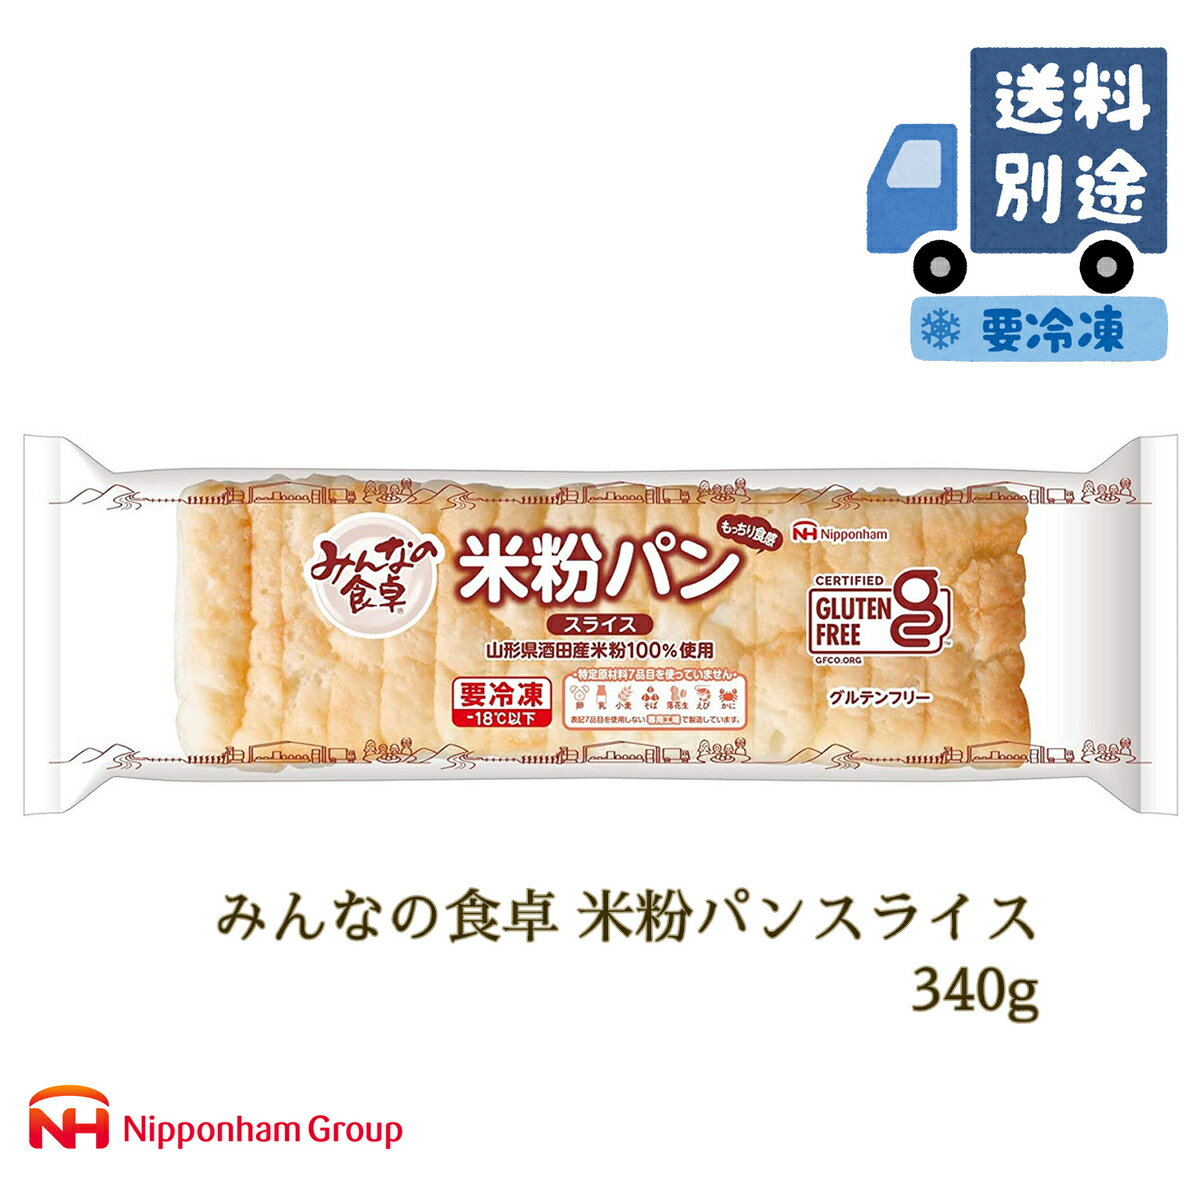 日本ハム『みんなの食卓 米粉パンスライス 340g』